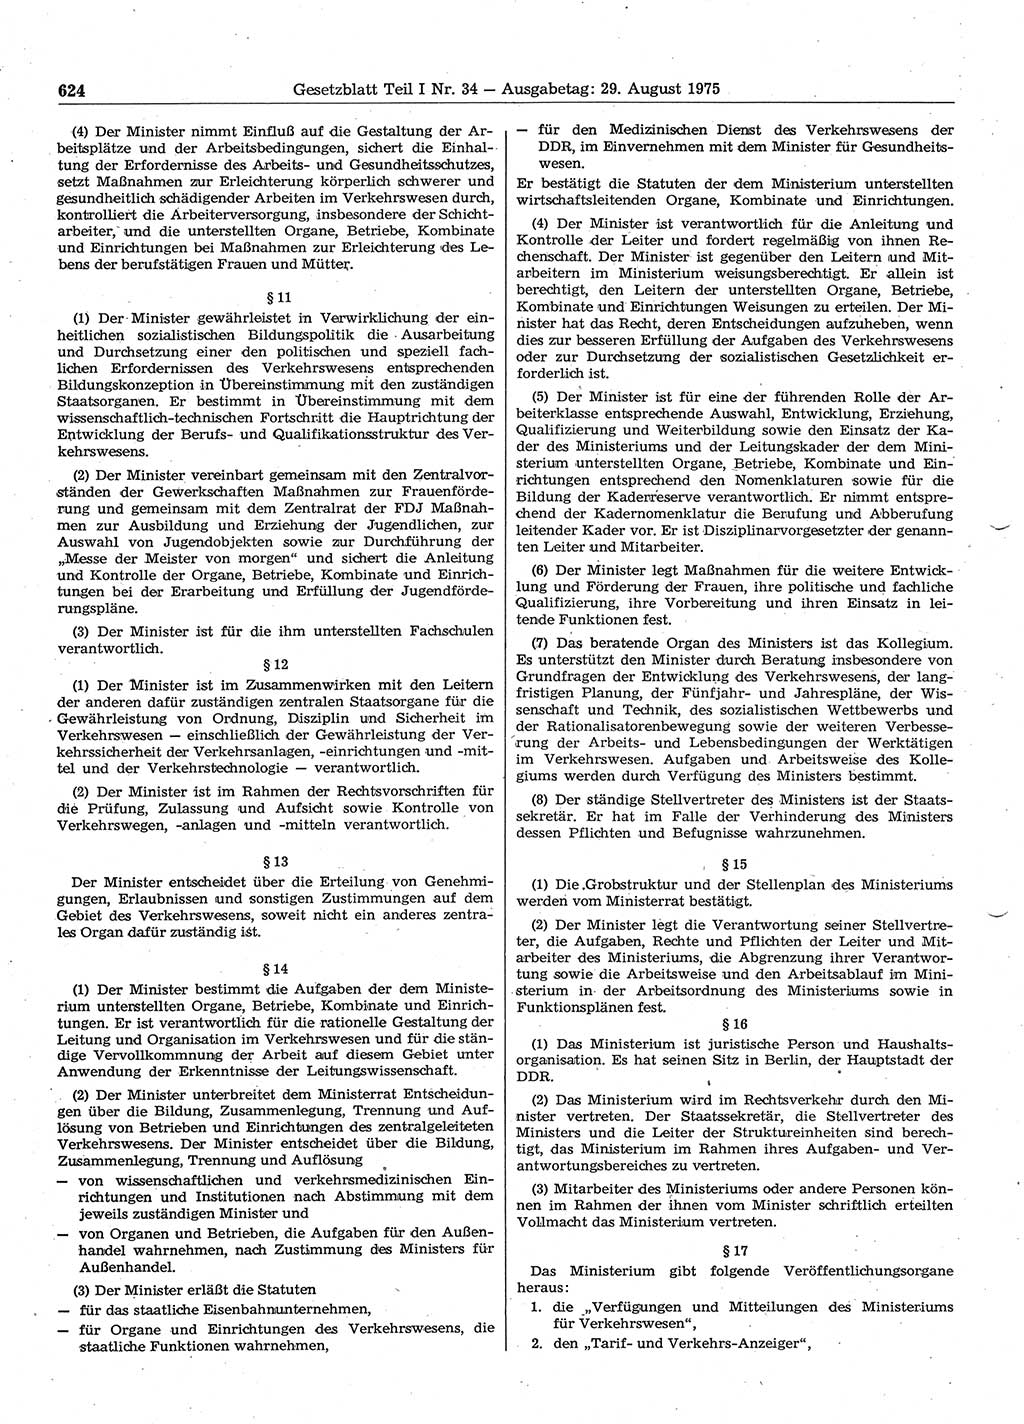 Gesetzblatt (GBl.) der Deutschen Demokratischen Republik (DDR) Teil Ⅰ 1975, Seite 624 (GBl. DDR Ⅰ 1975, S. 624)